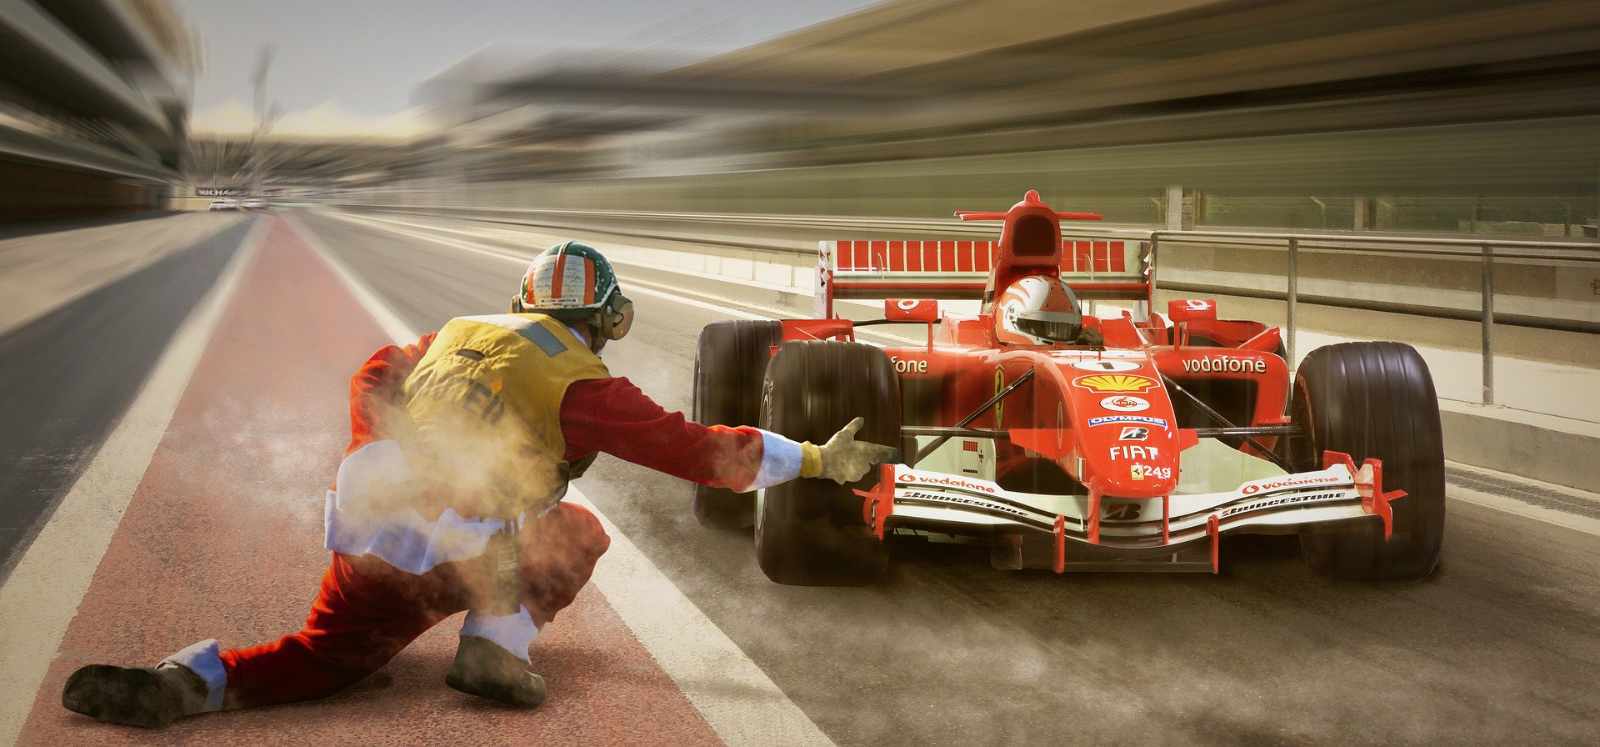 Formel 1 startet heute Abend kostenlose, virtuelle Grand-Prix-Rennen